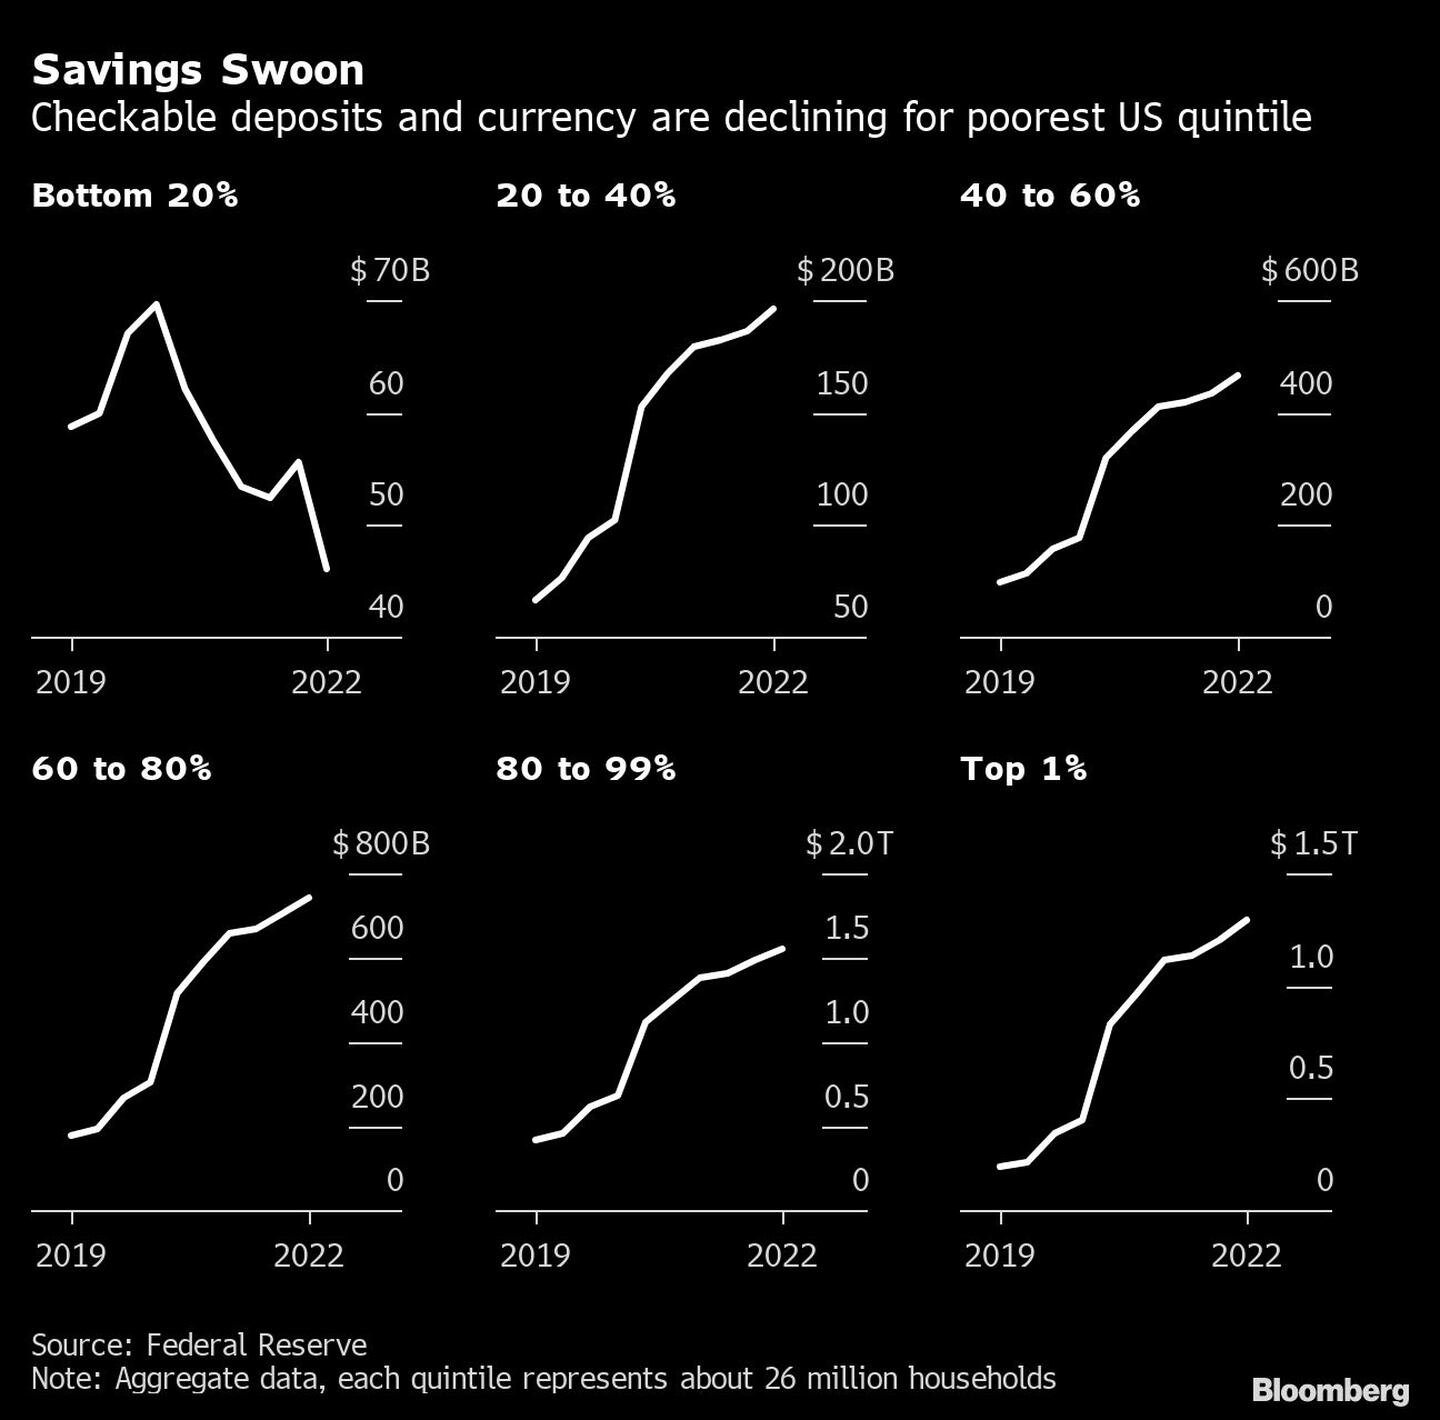 Ahorros se desploman
Los depósitos en cheques y en moneda disminuyen para el quintil más pobre de EE.UU.
20% inferior, 20 a 40%, 40 a 60%, 60 a 80%, 80 a 99%, 1% superiordfd